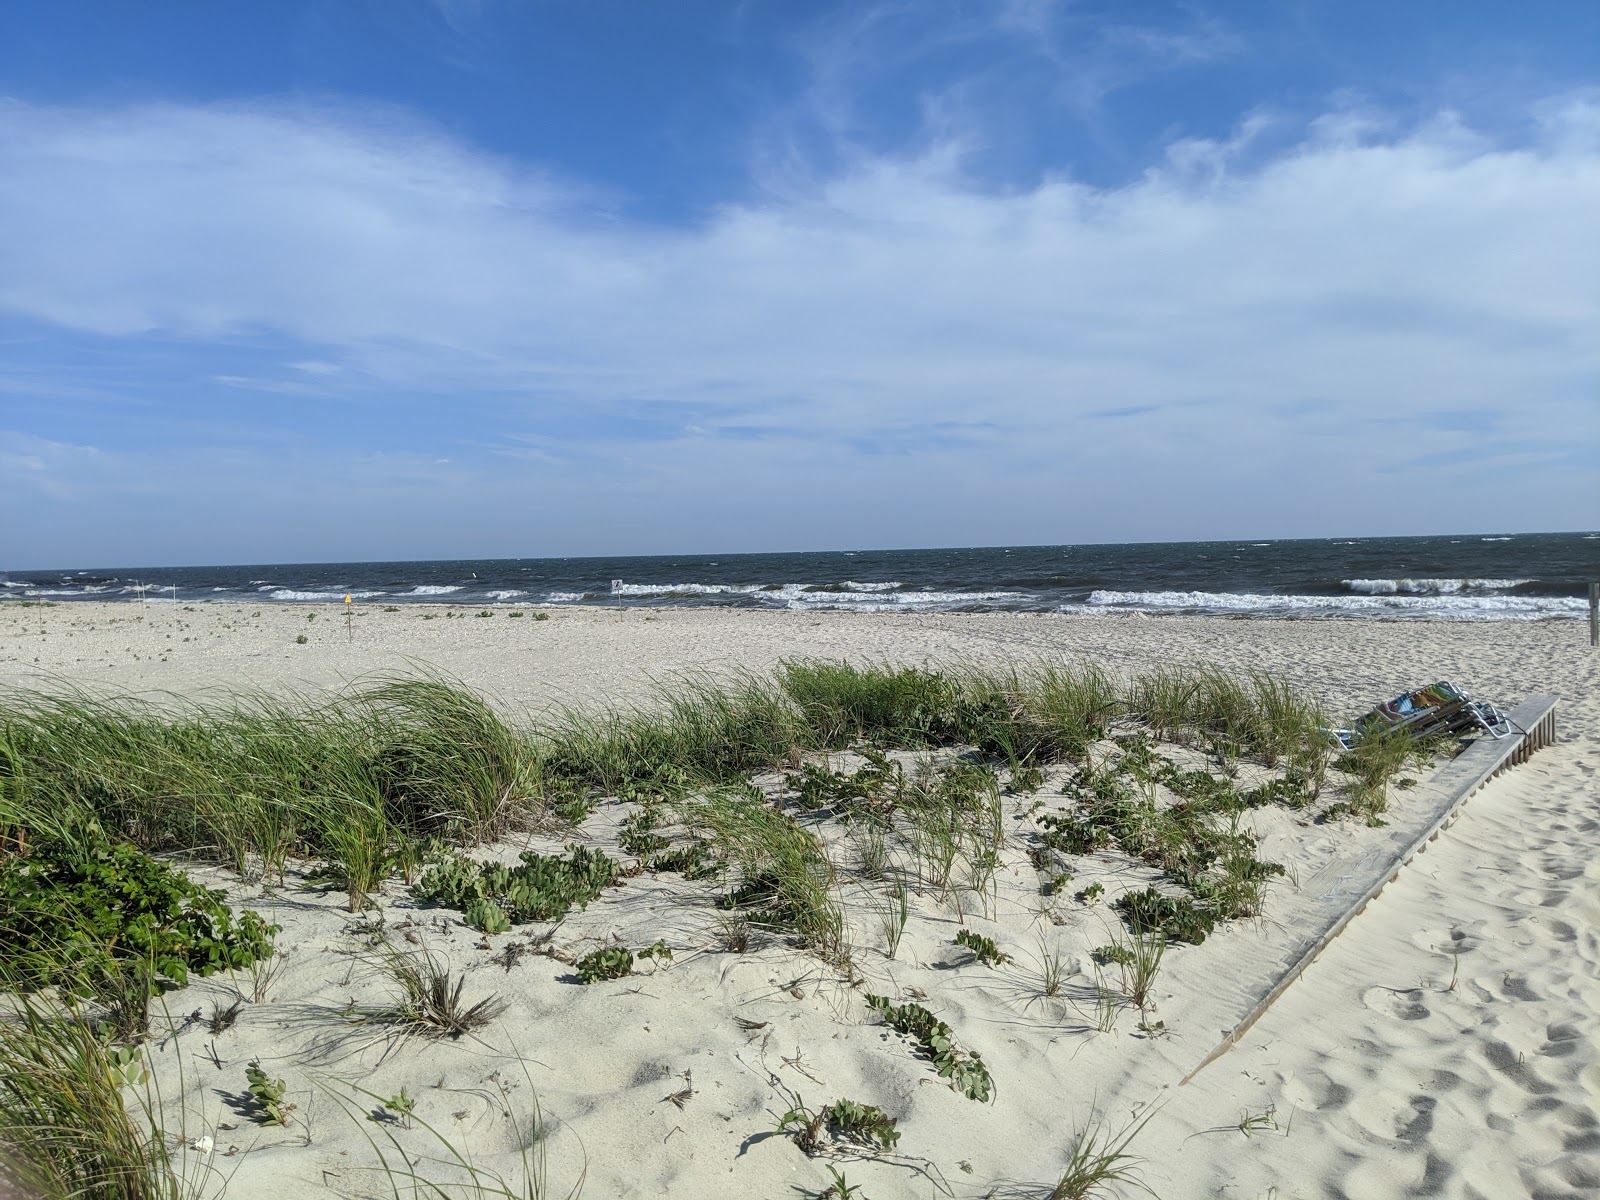 Zdjęcie Wychmere beach z powierzchnią jasny piasek